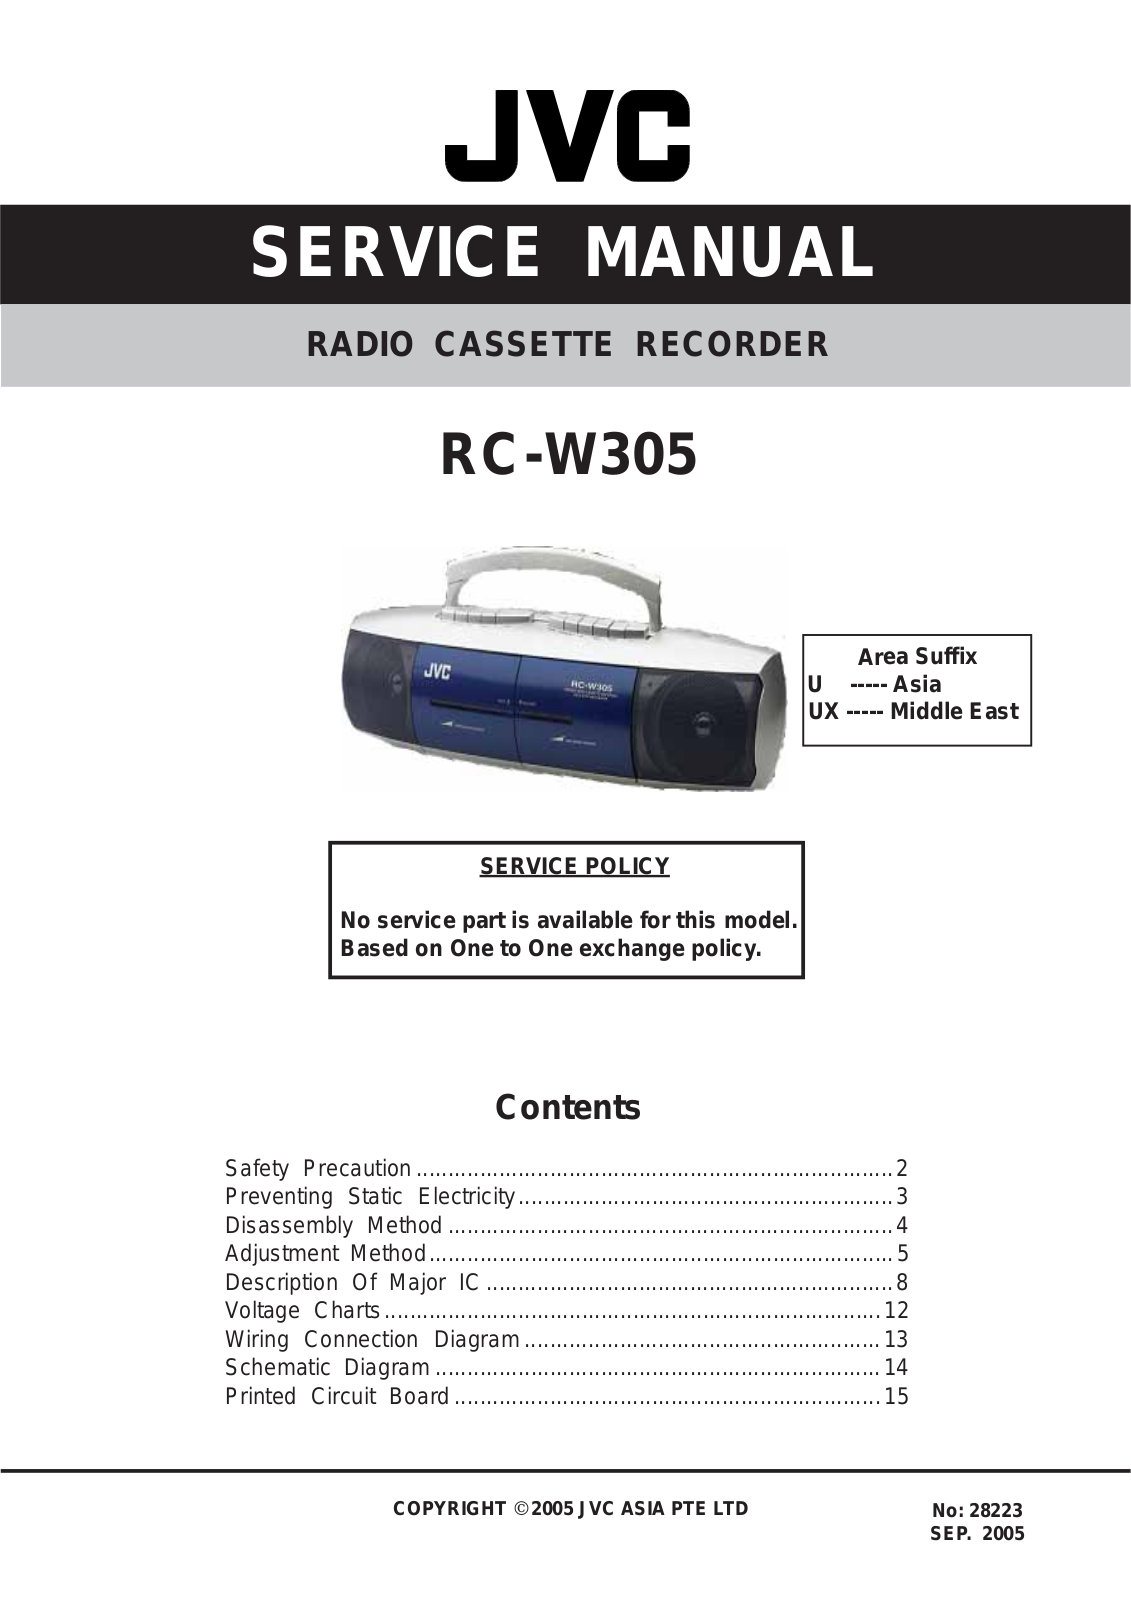 Jvc RC-W305 Service Manual